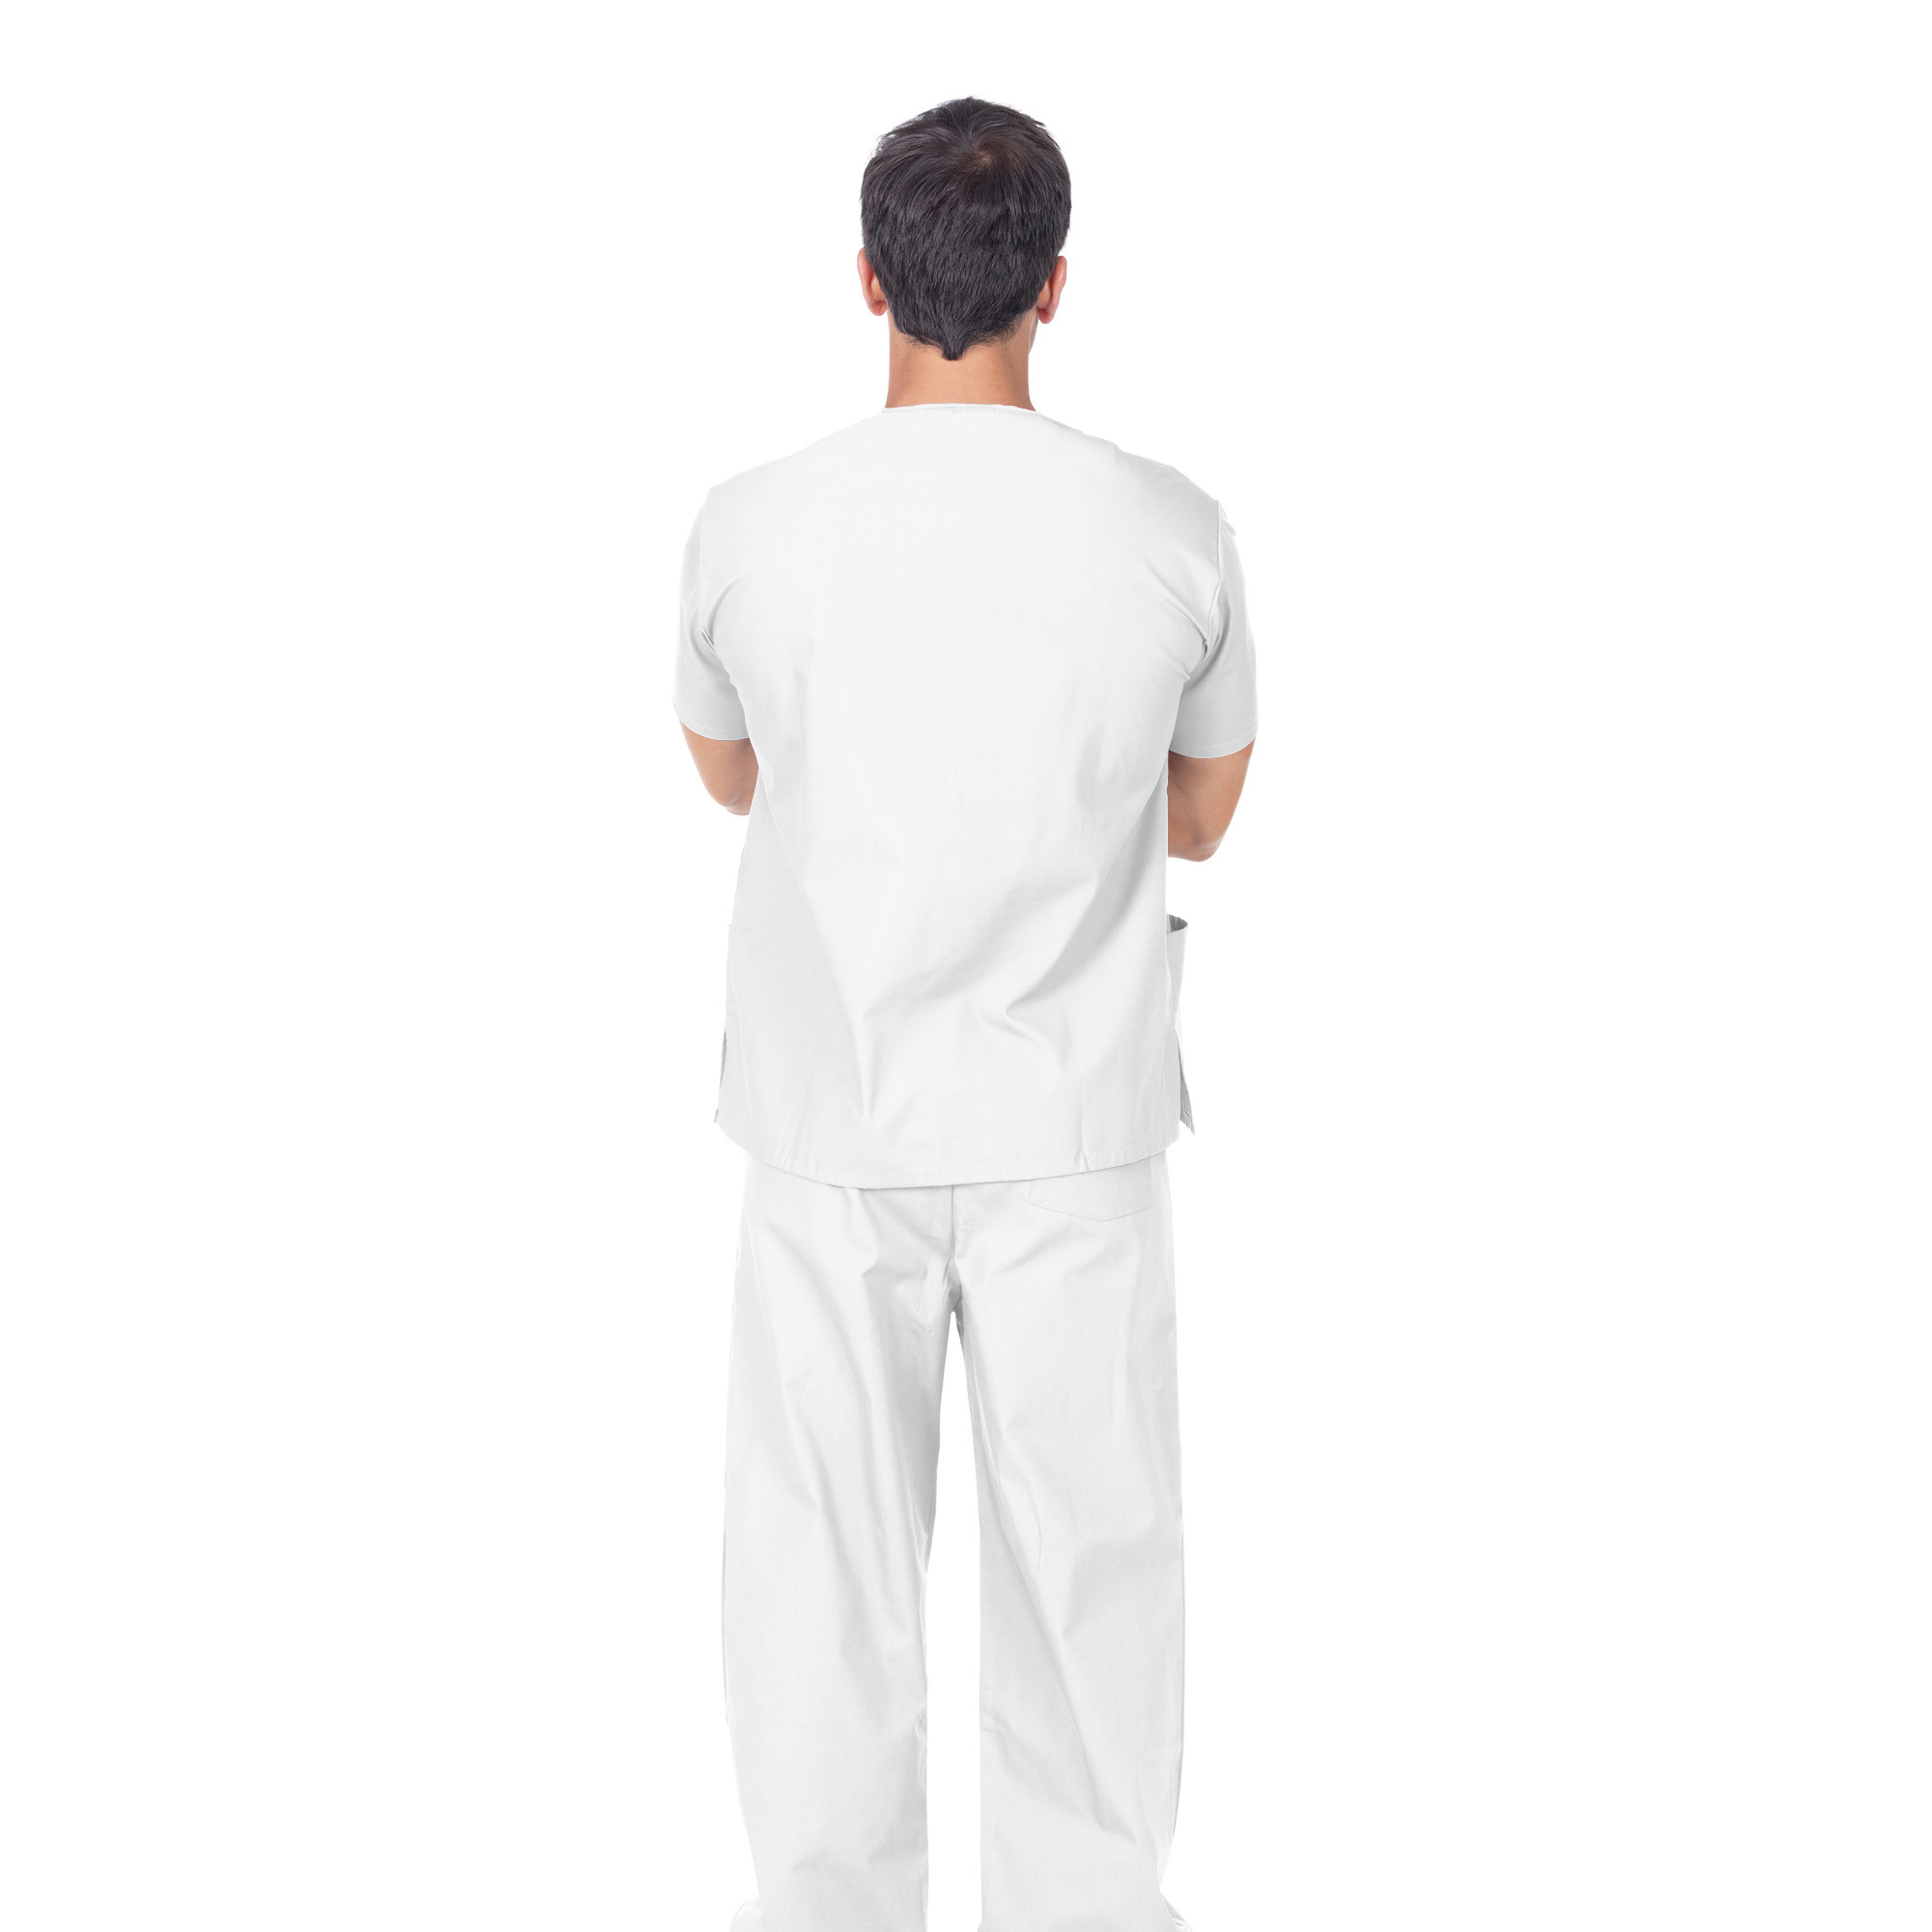 Pantalon professionnel unisexe en coton blanc, taille S